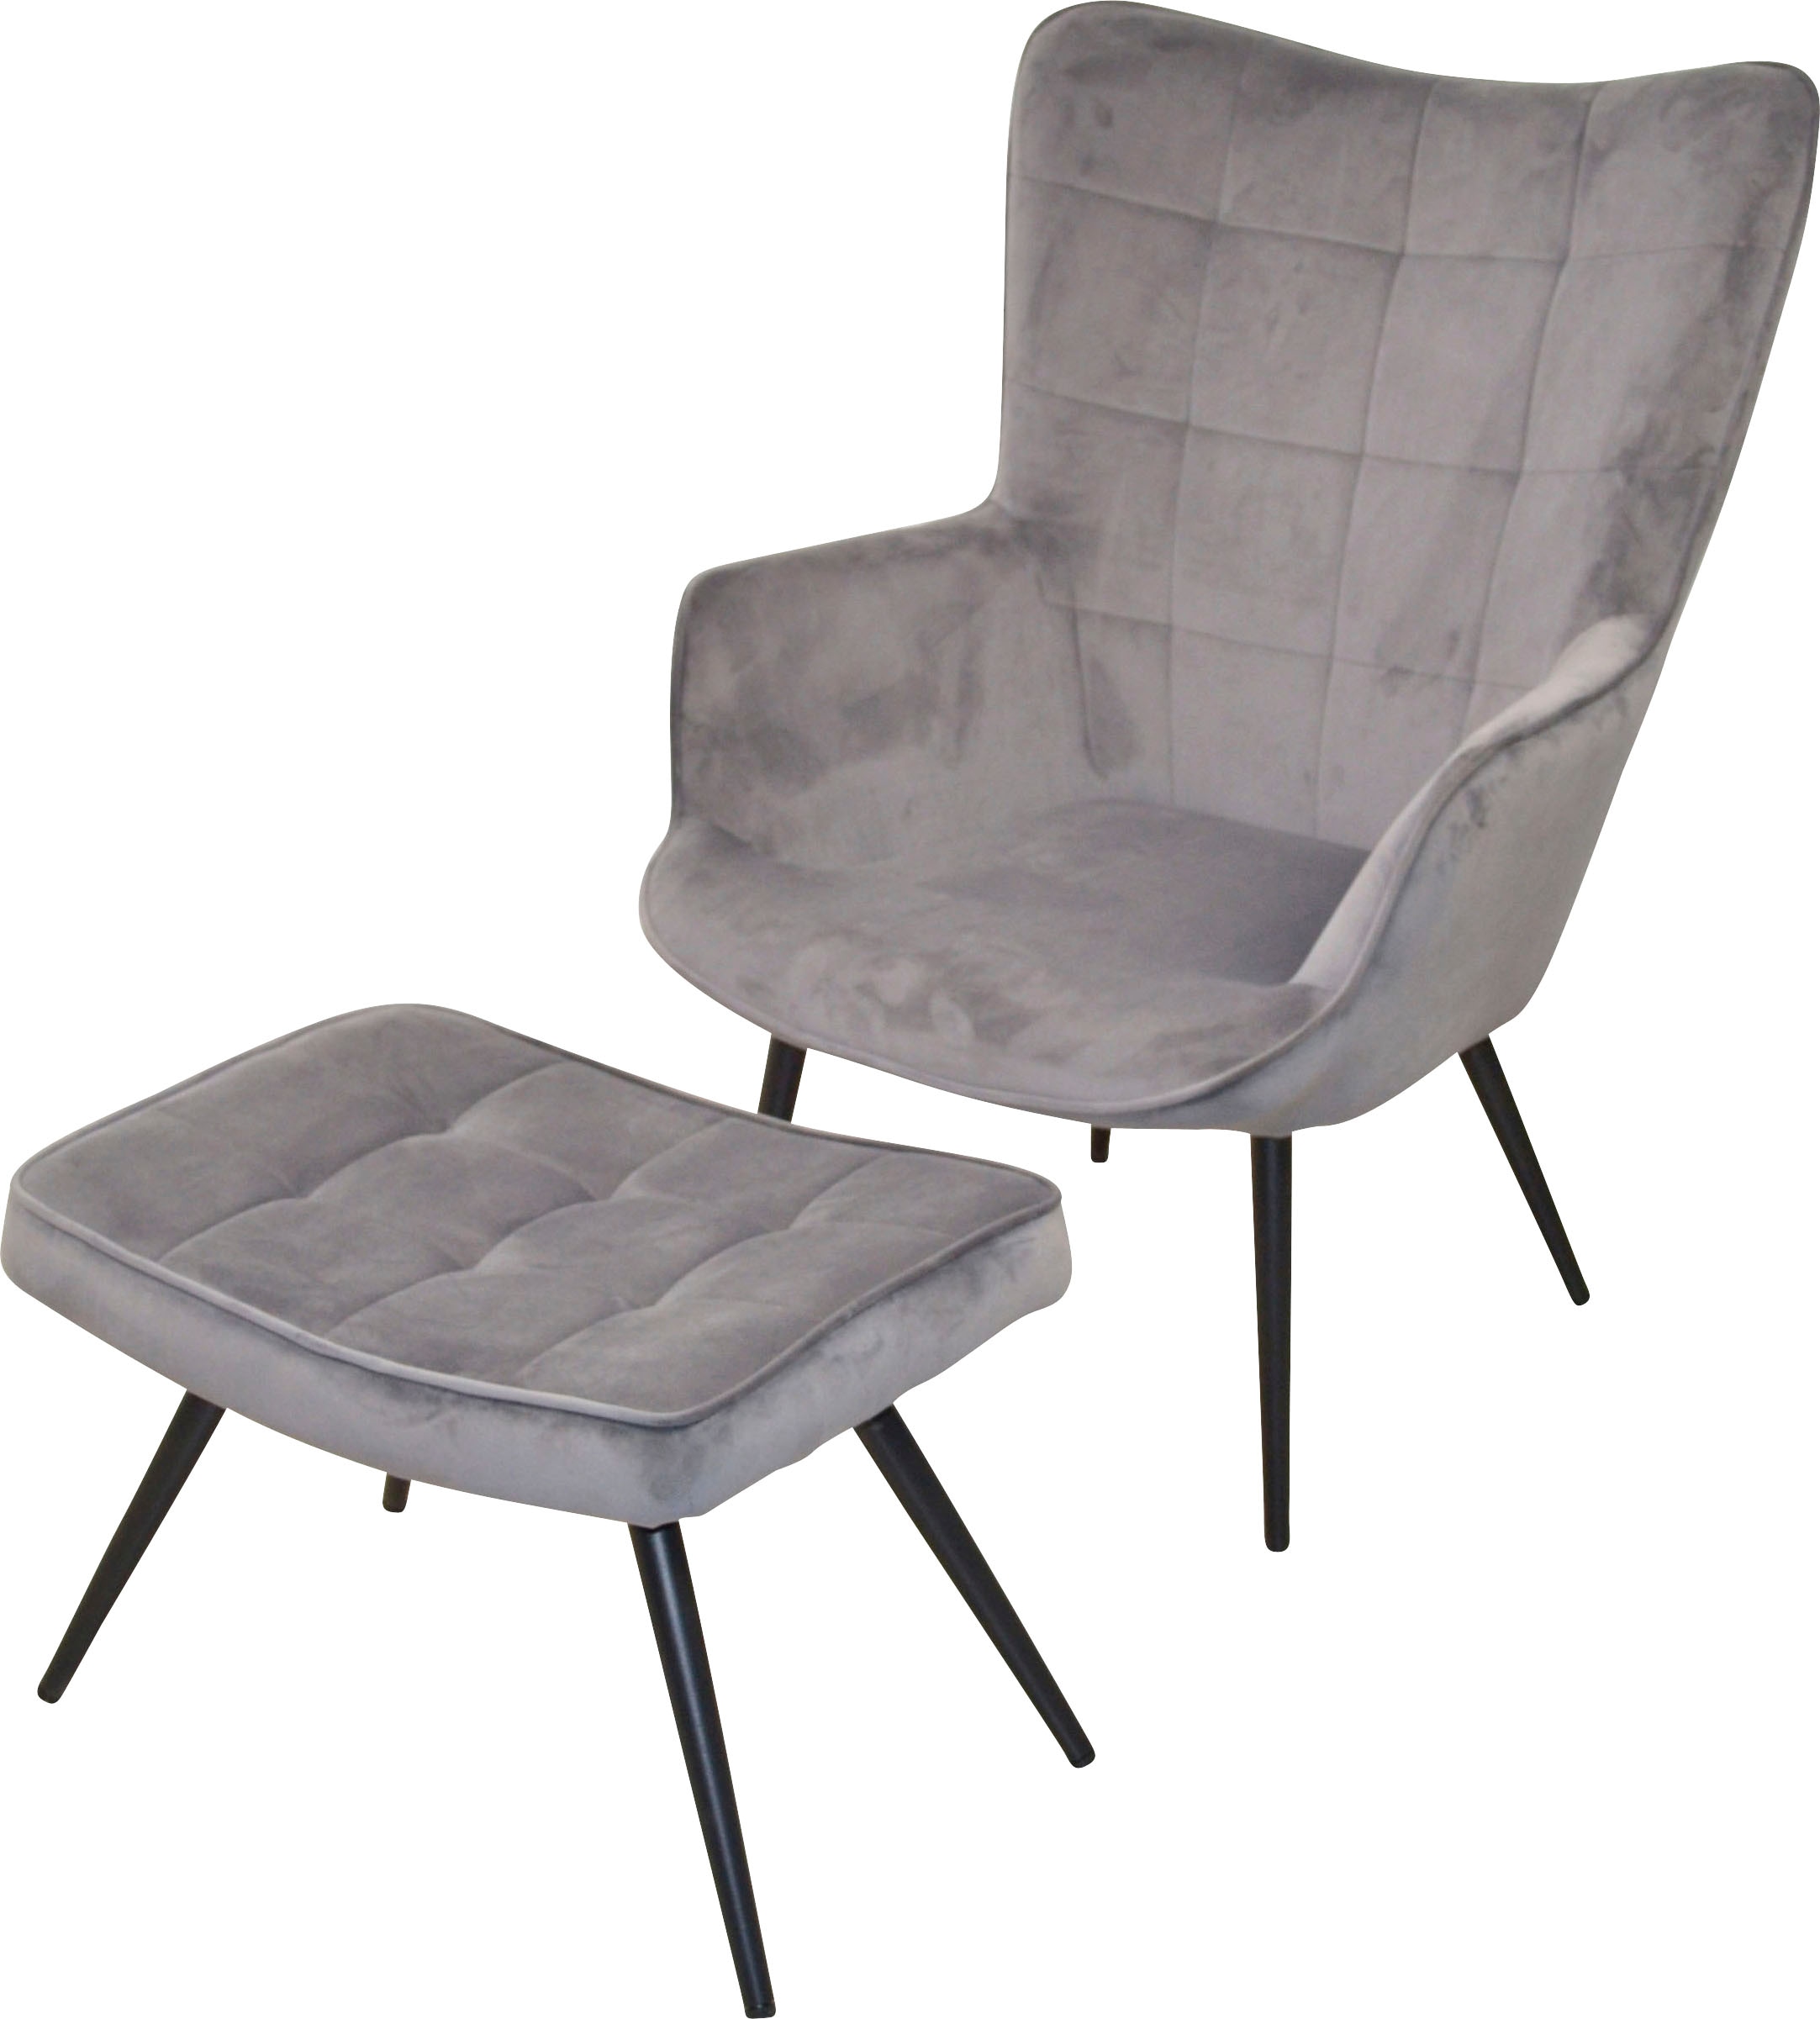 HOFMANN LIVING AND schwarz »Jaro«, aus mit Beinen Sessel kaufen Stahlrohr, MORE lackiert bequem Polstersessel